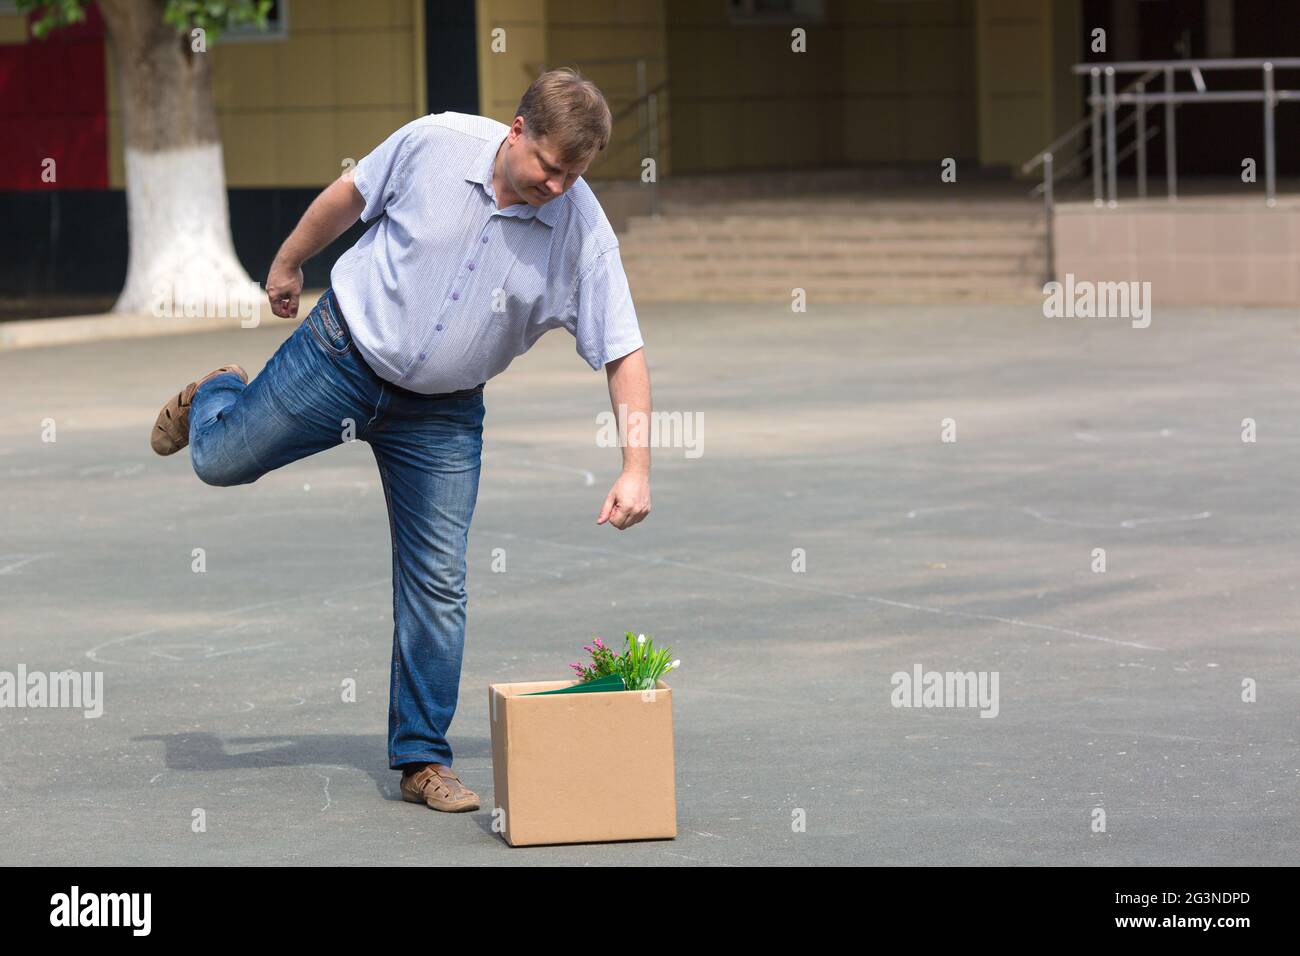 Erzürnter Mann kicks Box mit persönlichen Habseligkeiten nach der Entlassung. Stockfoto